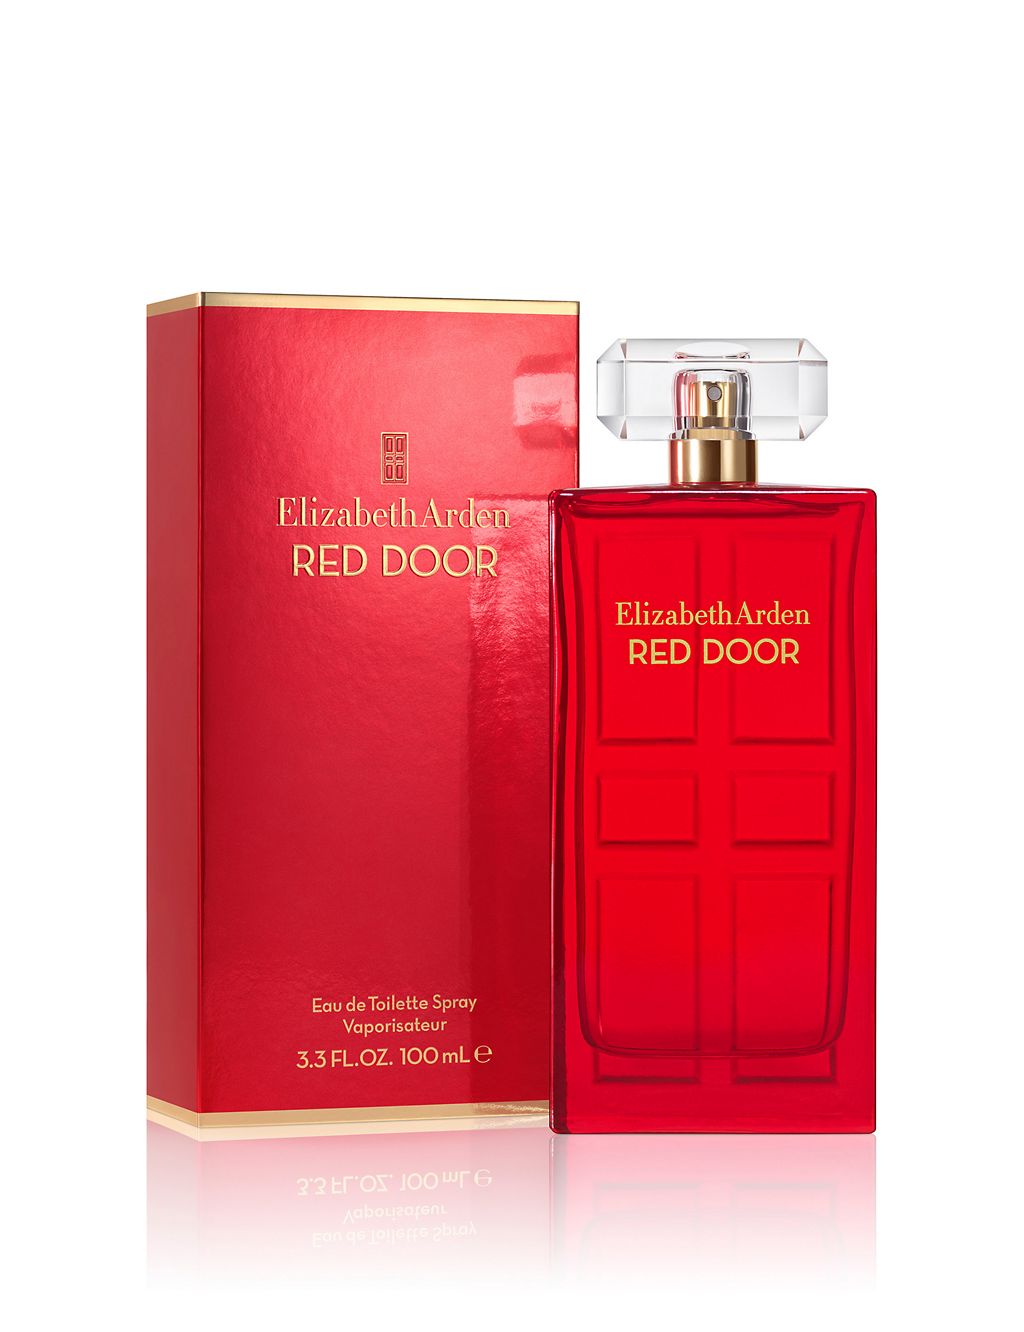 Red Door Eau de Toilette Spray Naturel, Perfume for Women 100ml 1 of 4